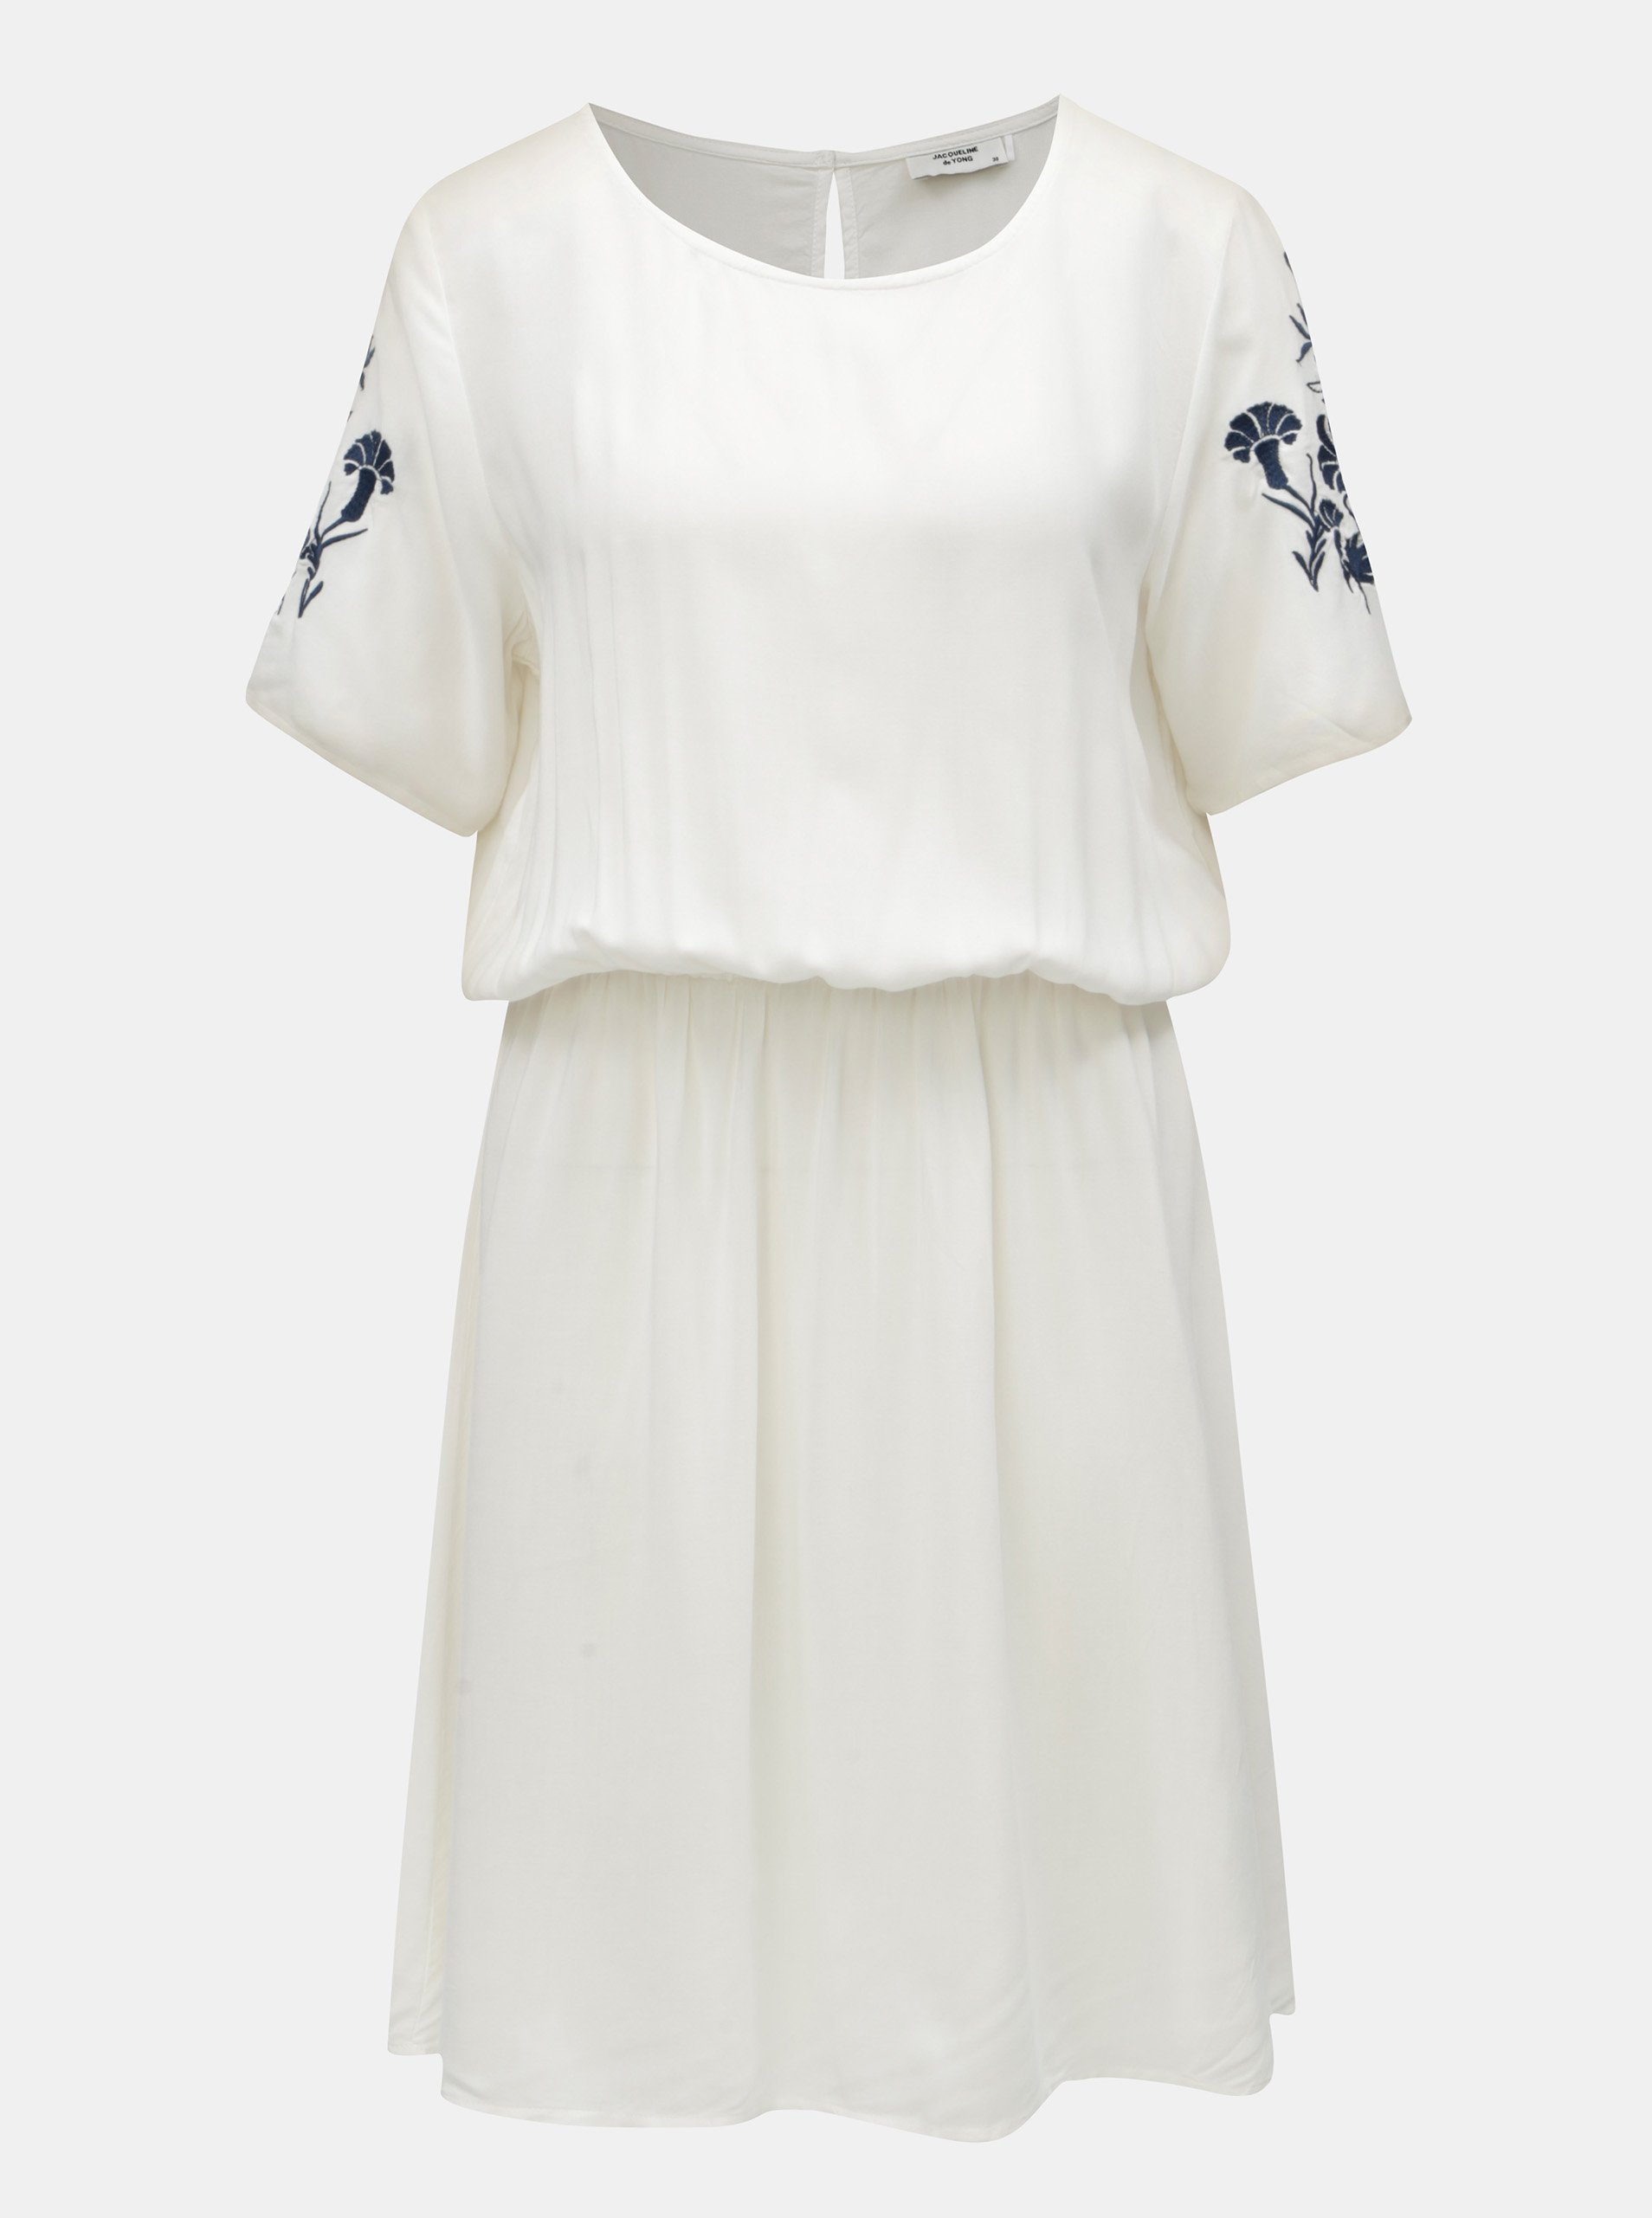 Modro-bílé šaty s výšivkou Jacqueline de Yong Eskild